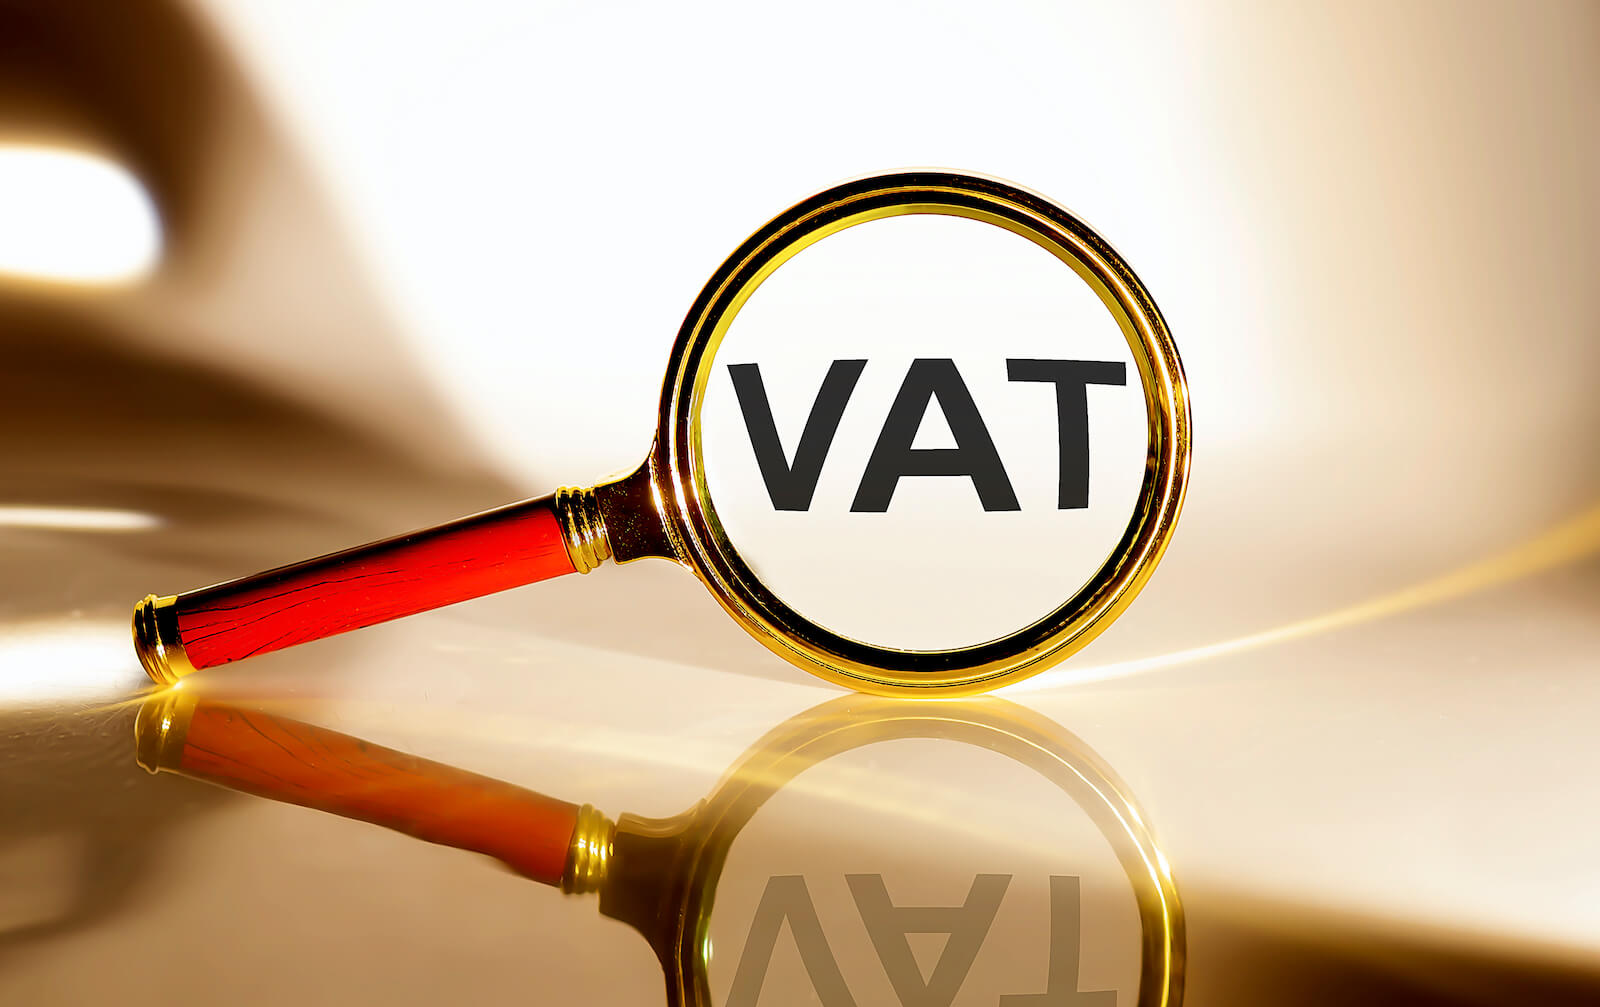 Brak zgłoszenia czynnego płatnika VAT